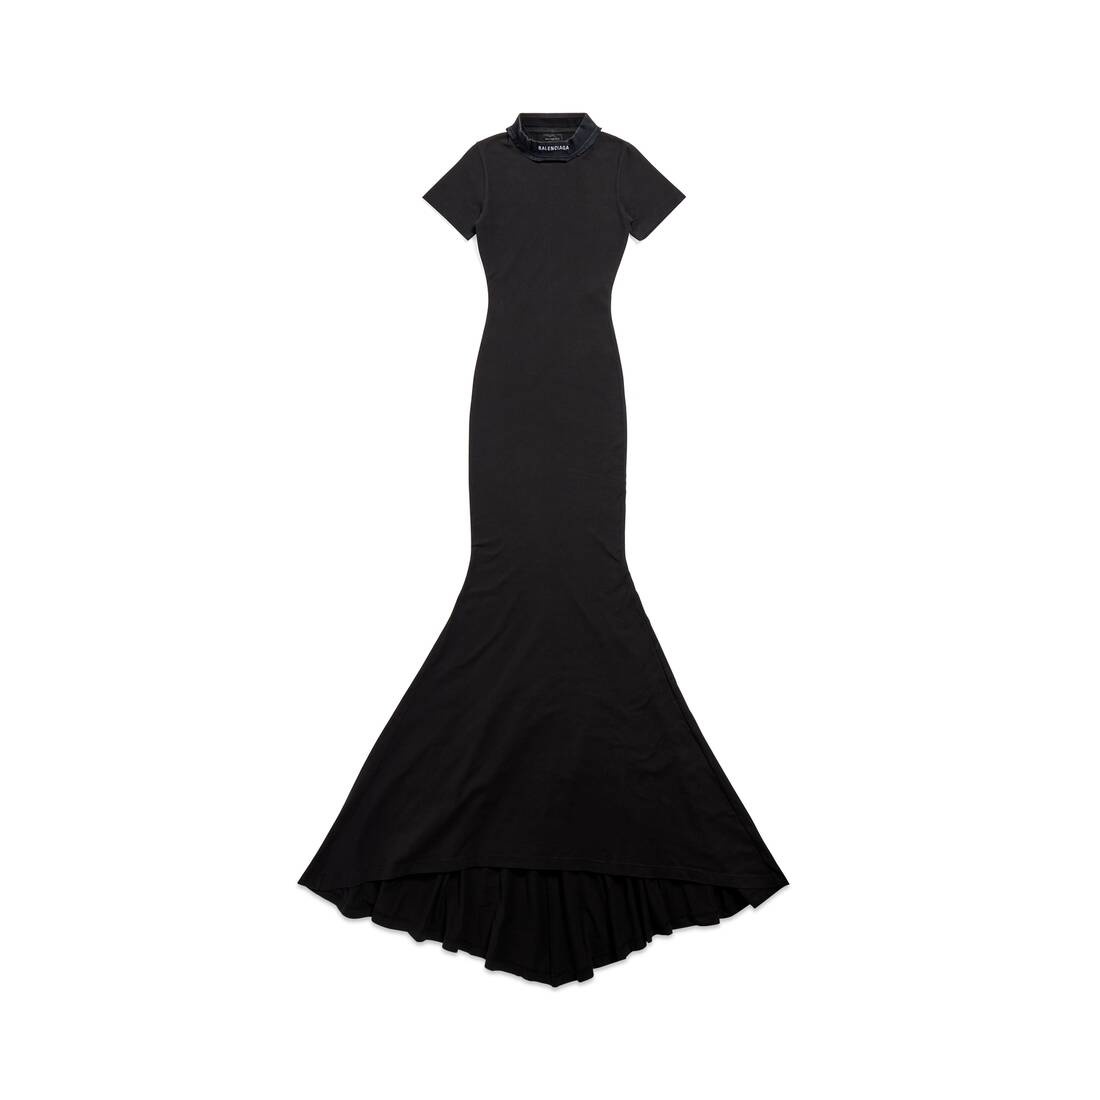 Women's Dress in Black Faded - 1